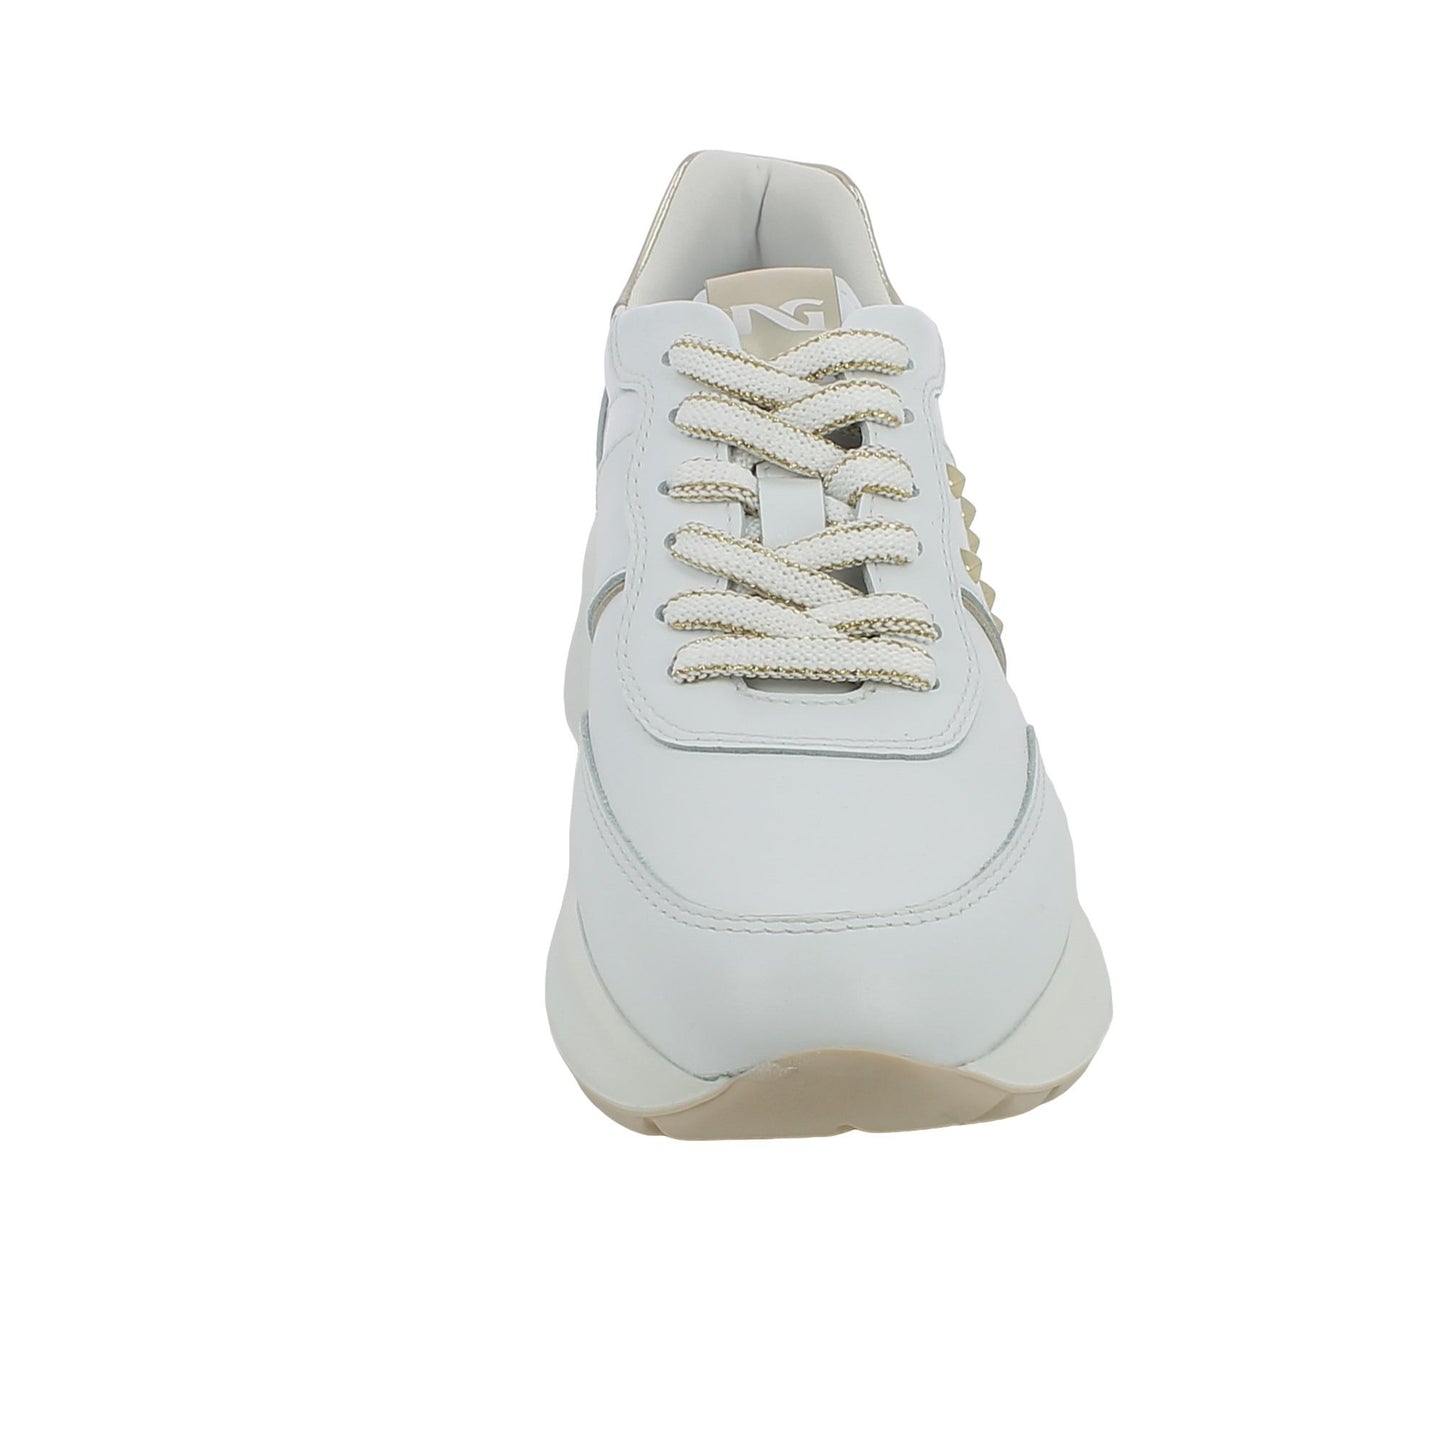 Sneaker NeroGiardini E409853D in pelle bianca con borchie e zeppa